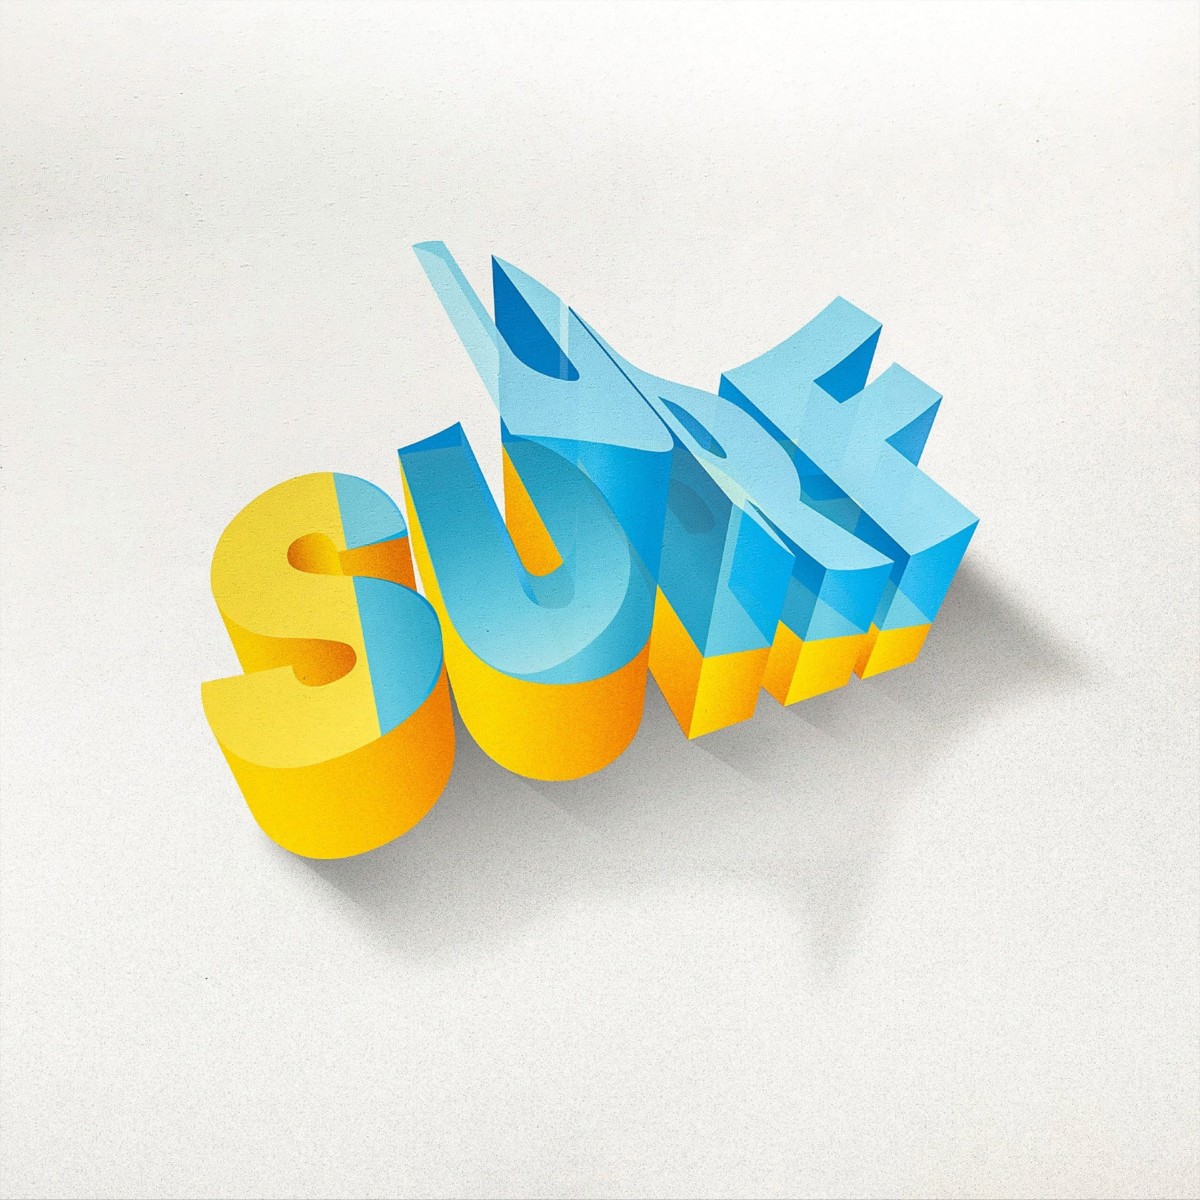 超强立体感3D文字设计作品，Lex Wilson创意3D字体设计。